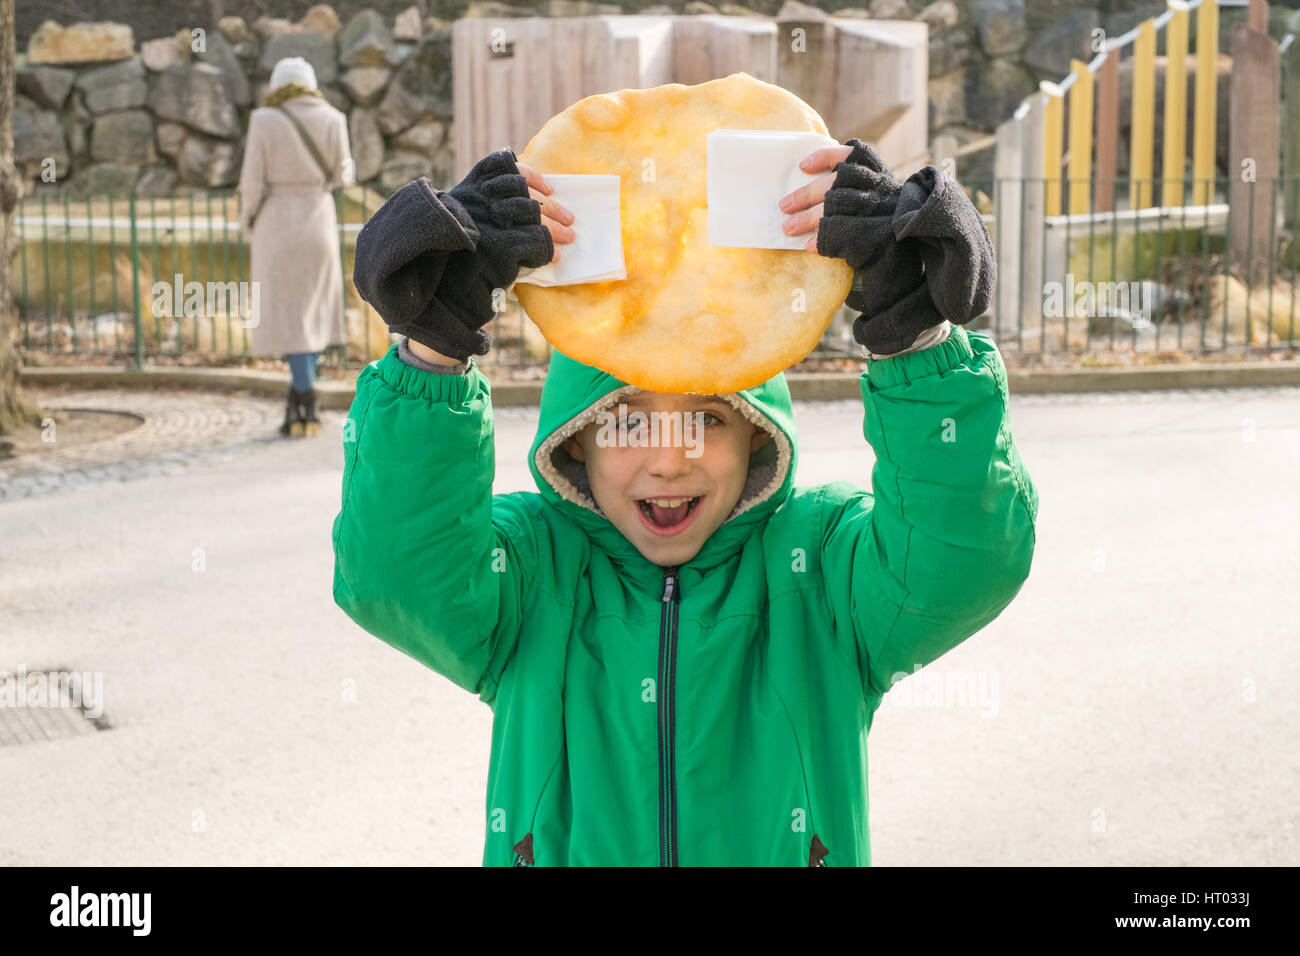 Los siete años de edad sosteniendo un Lángos, una húngara fritos flatbread. Viena, Austria, Europa. Foto de stock